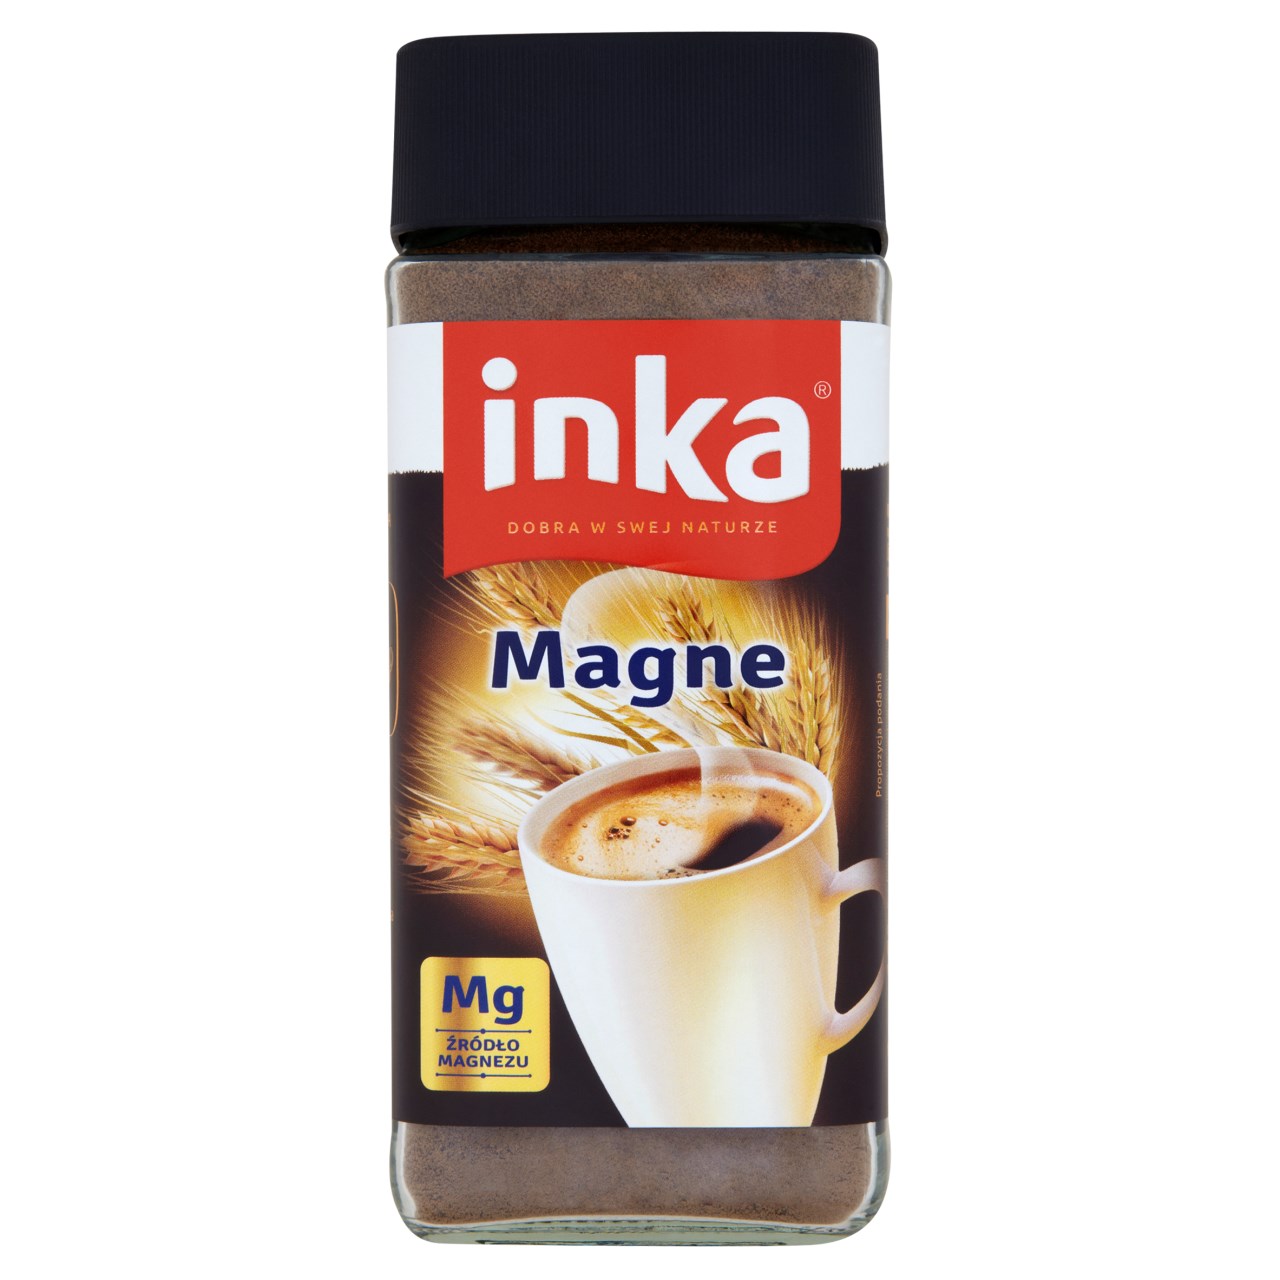 Inka Magne Rozpuszczalna kawa zbożowa wzbogacona w magnez 100 g